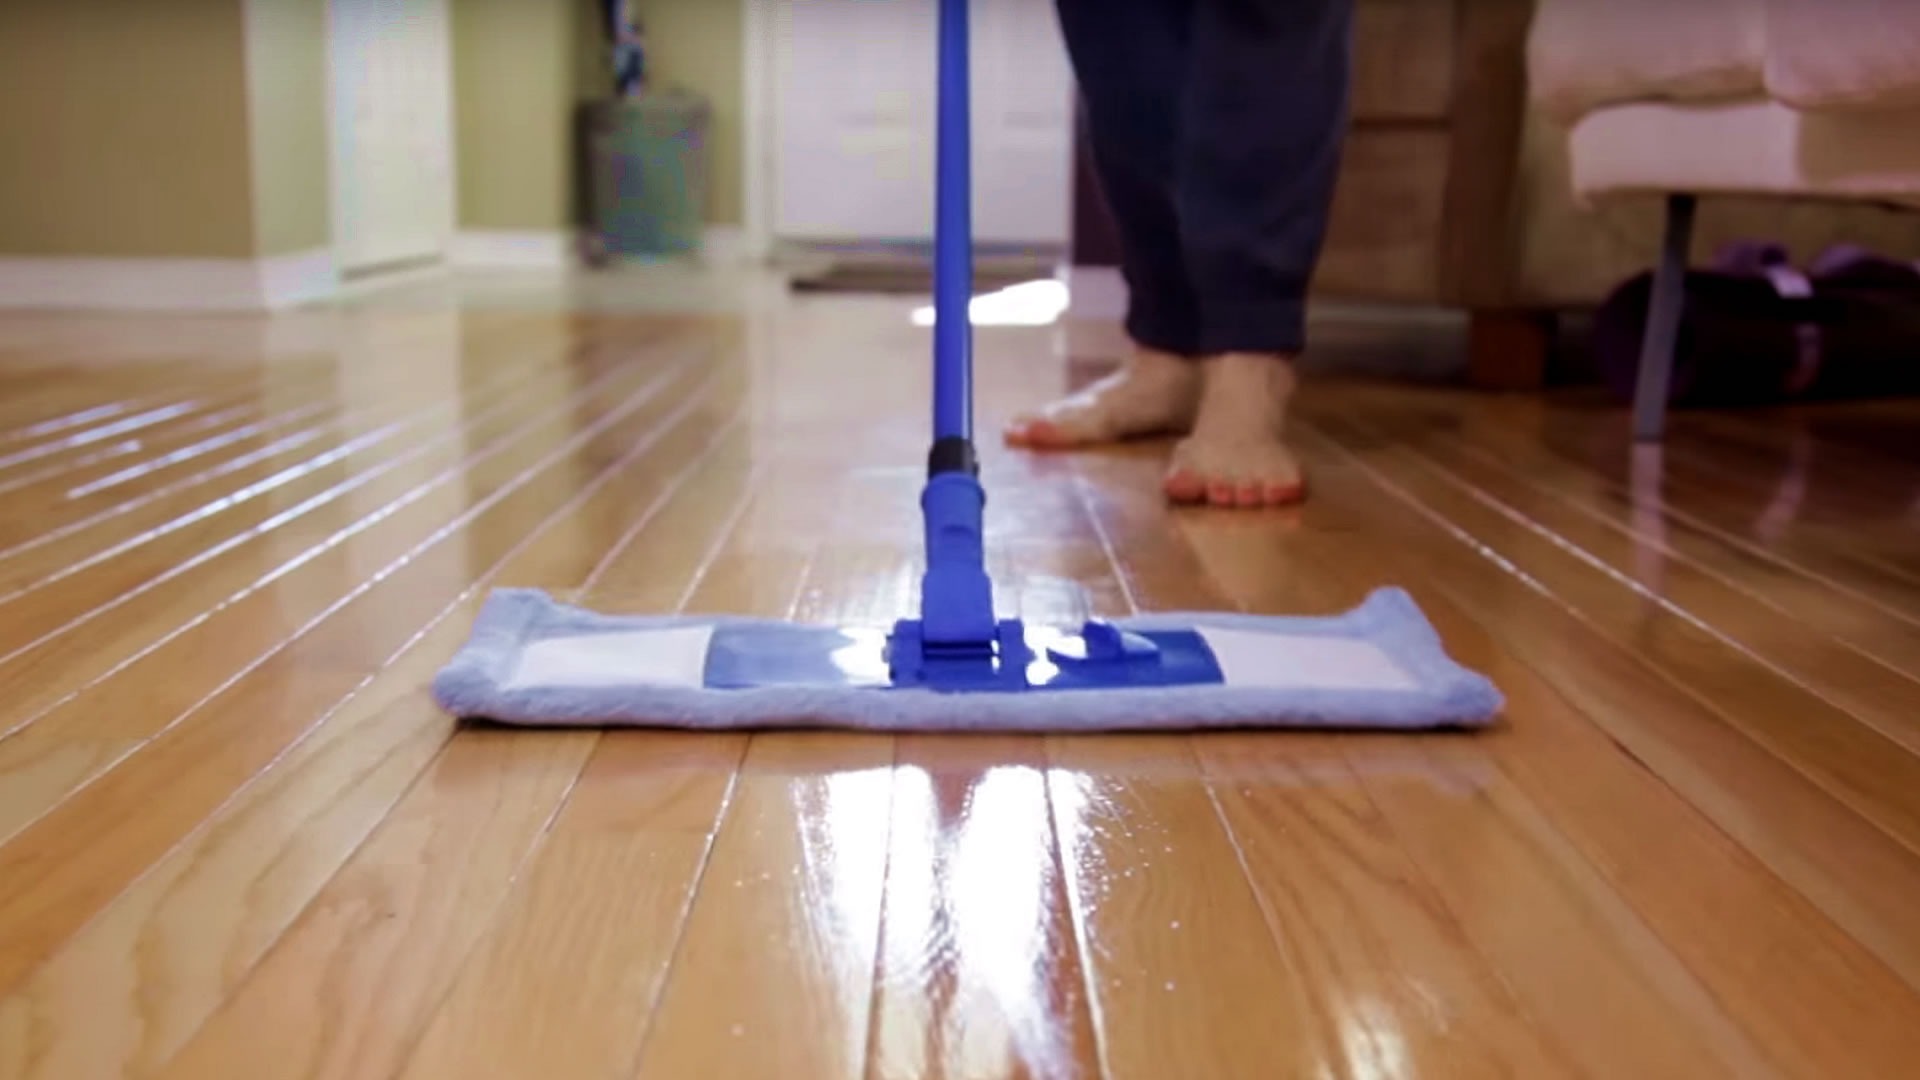 وصفة رهيبة ستمكنك من تنظيف سيراميك الأرضيات من الاتساخات المتواجدة في الفروق بين البلاطات